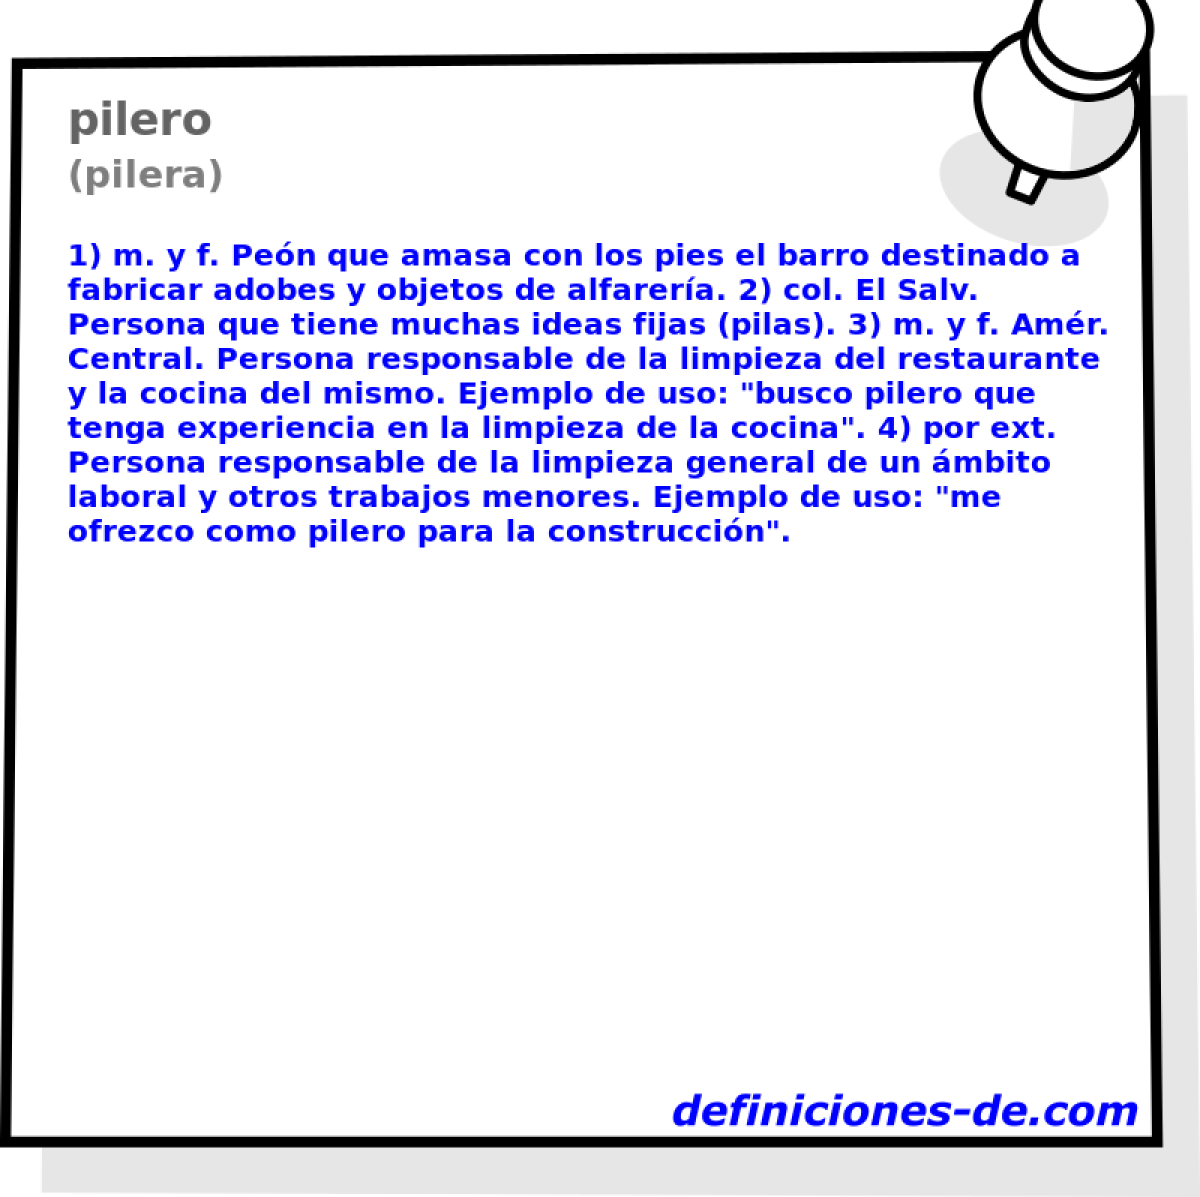 pilero (pilera)